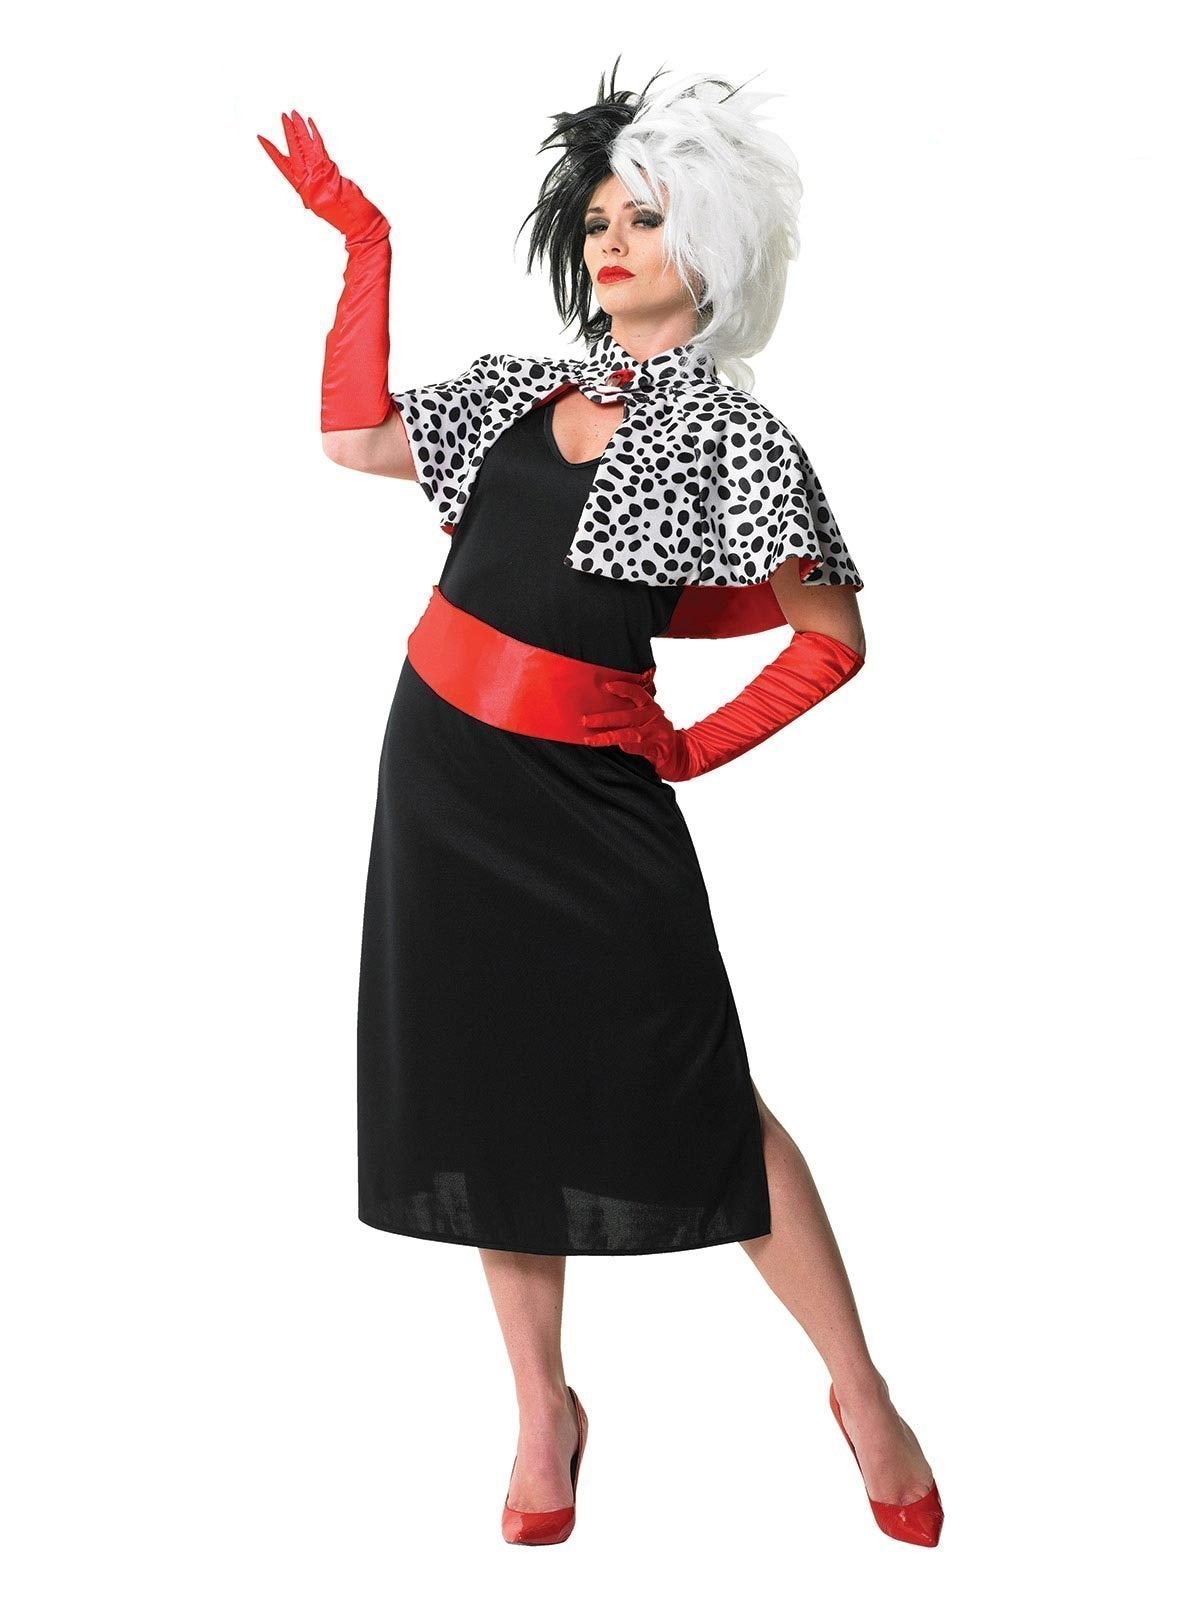 Cruella De Vil Costume for Adults - Disney 101 Dalmatians